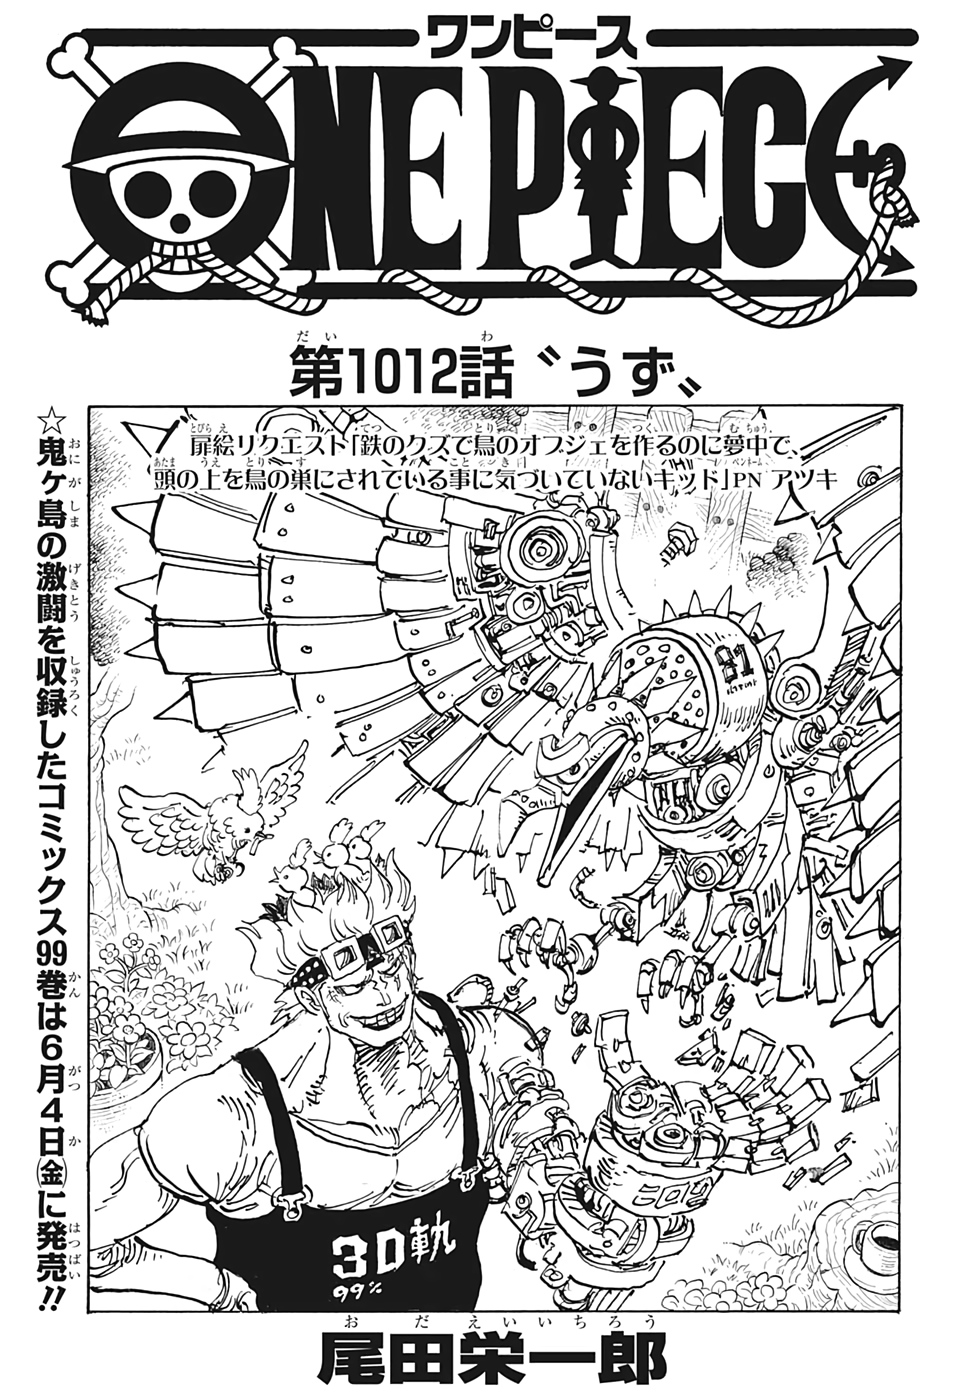 Capitulo 1012 One Piece Wiki Fandom